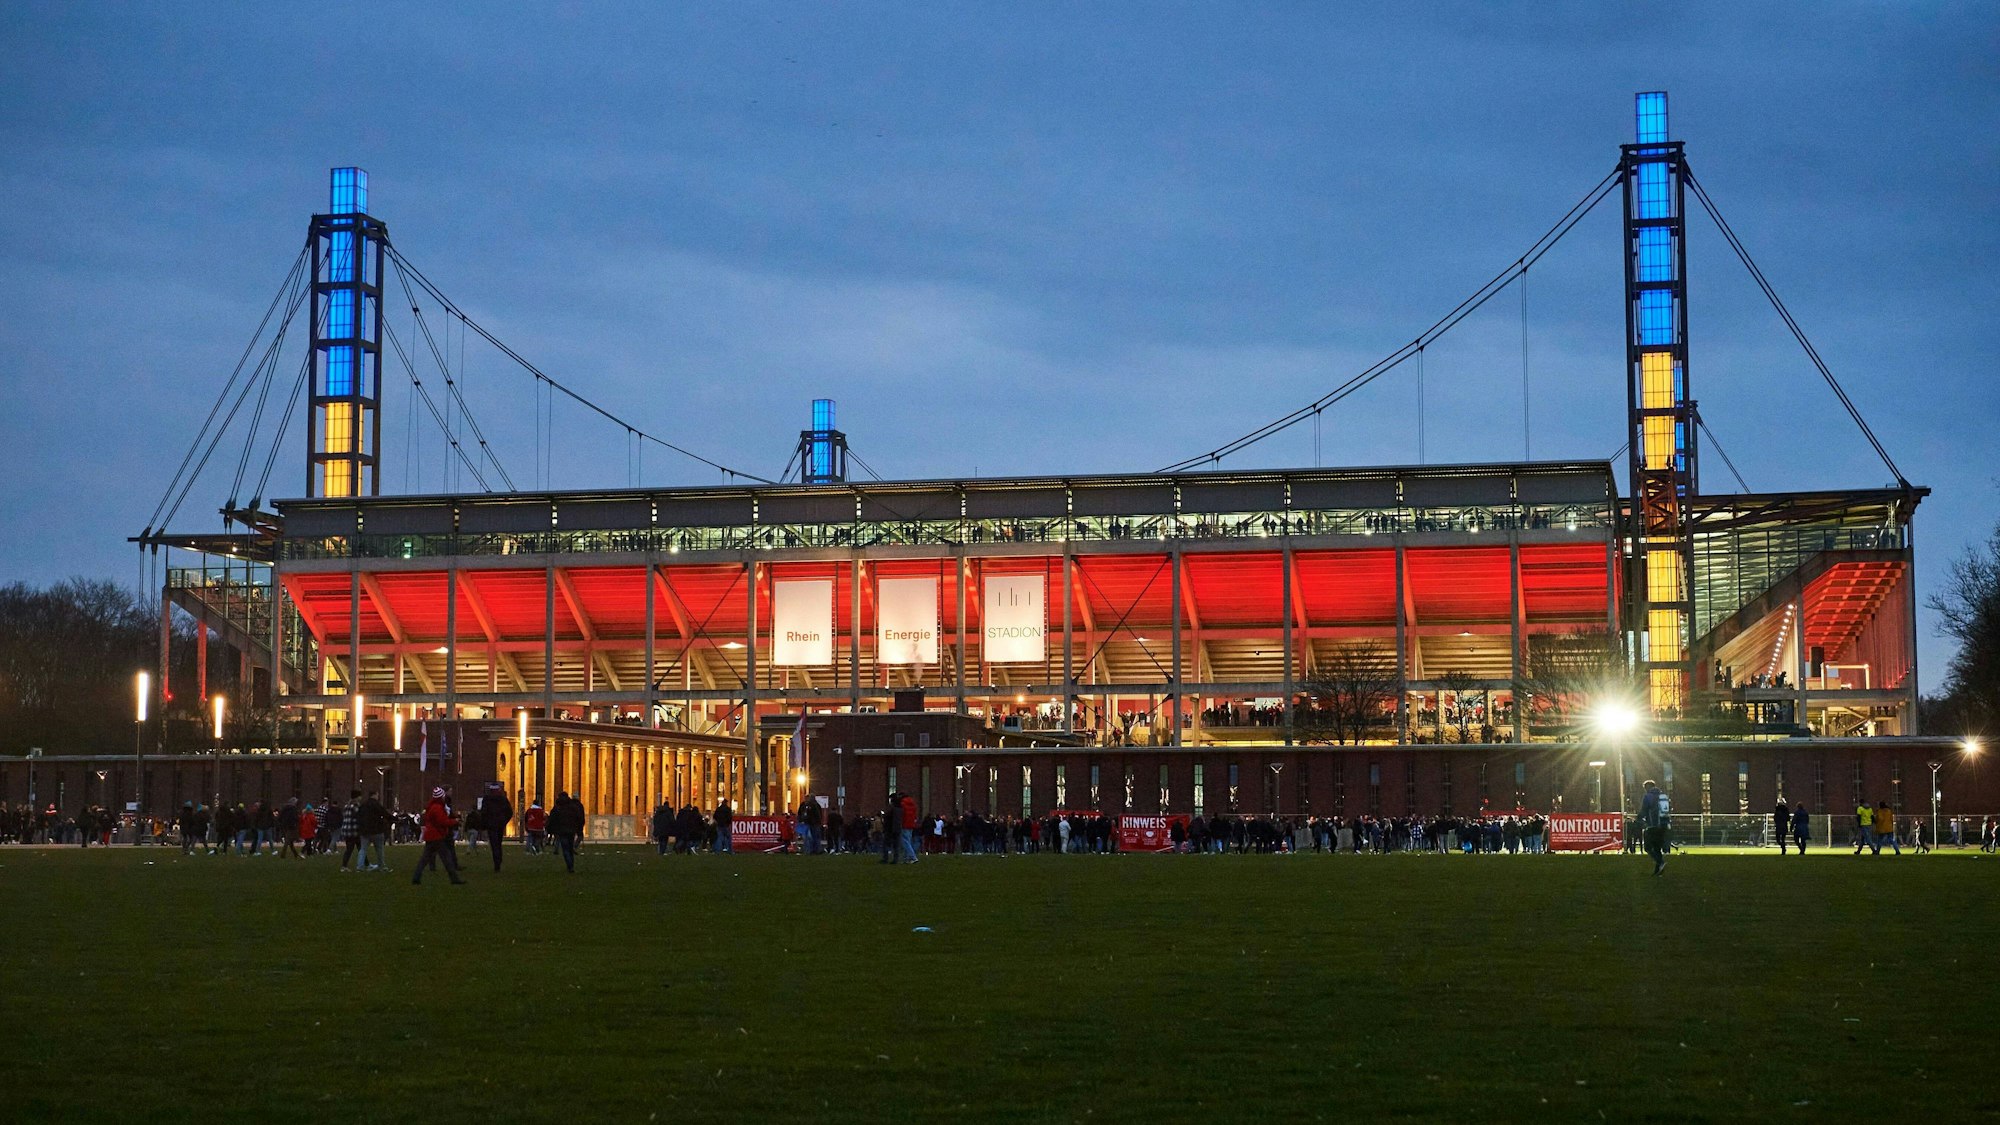 Das Rhein-Energie-Stadion in Köln ist in den Abendstunden beleuchtet